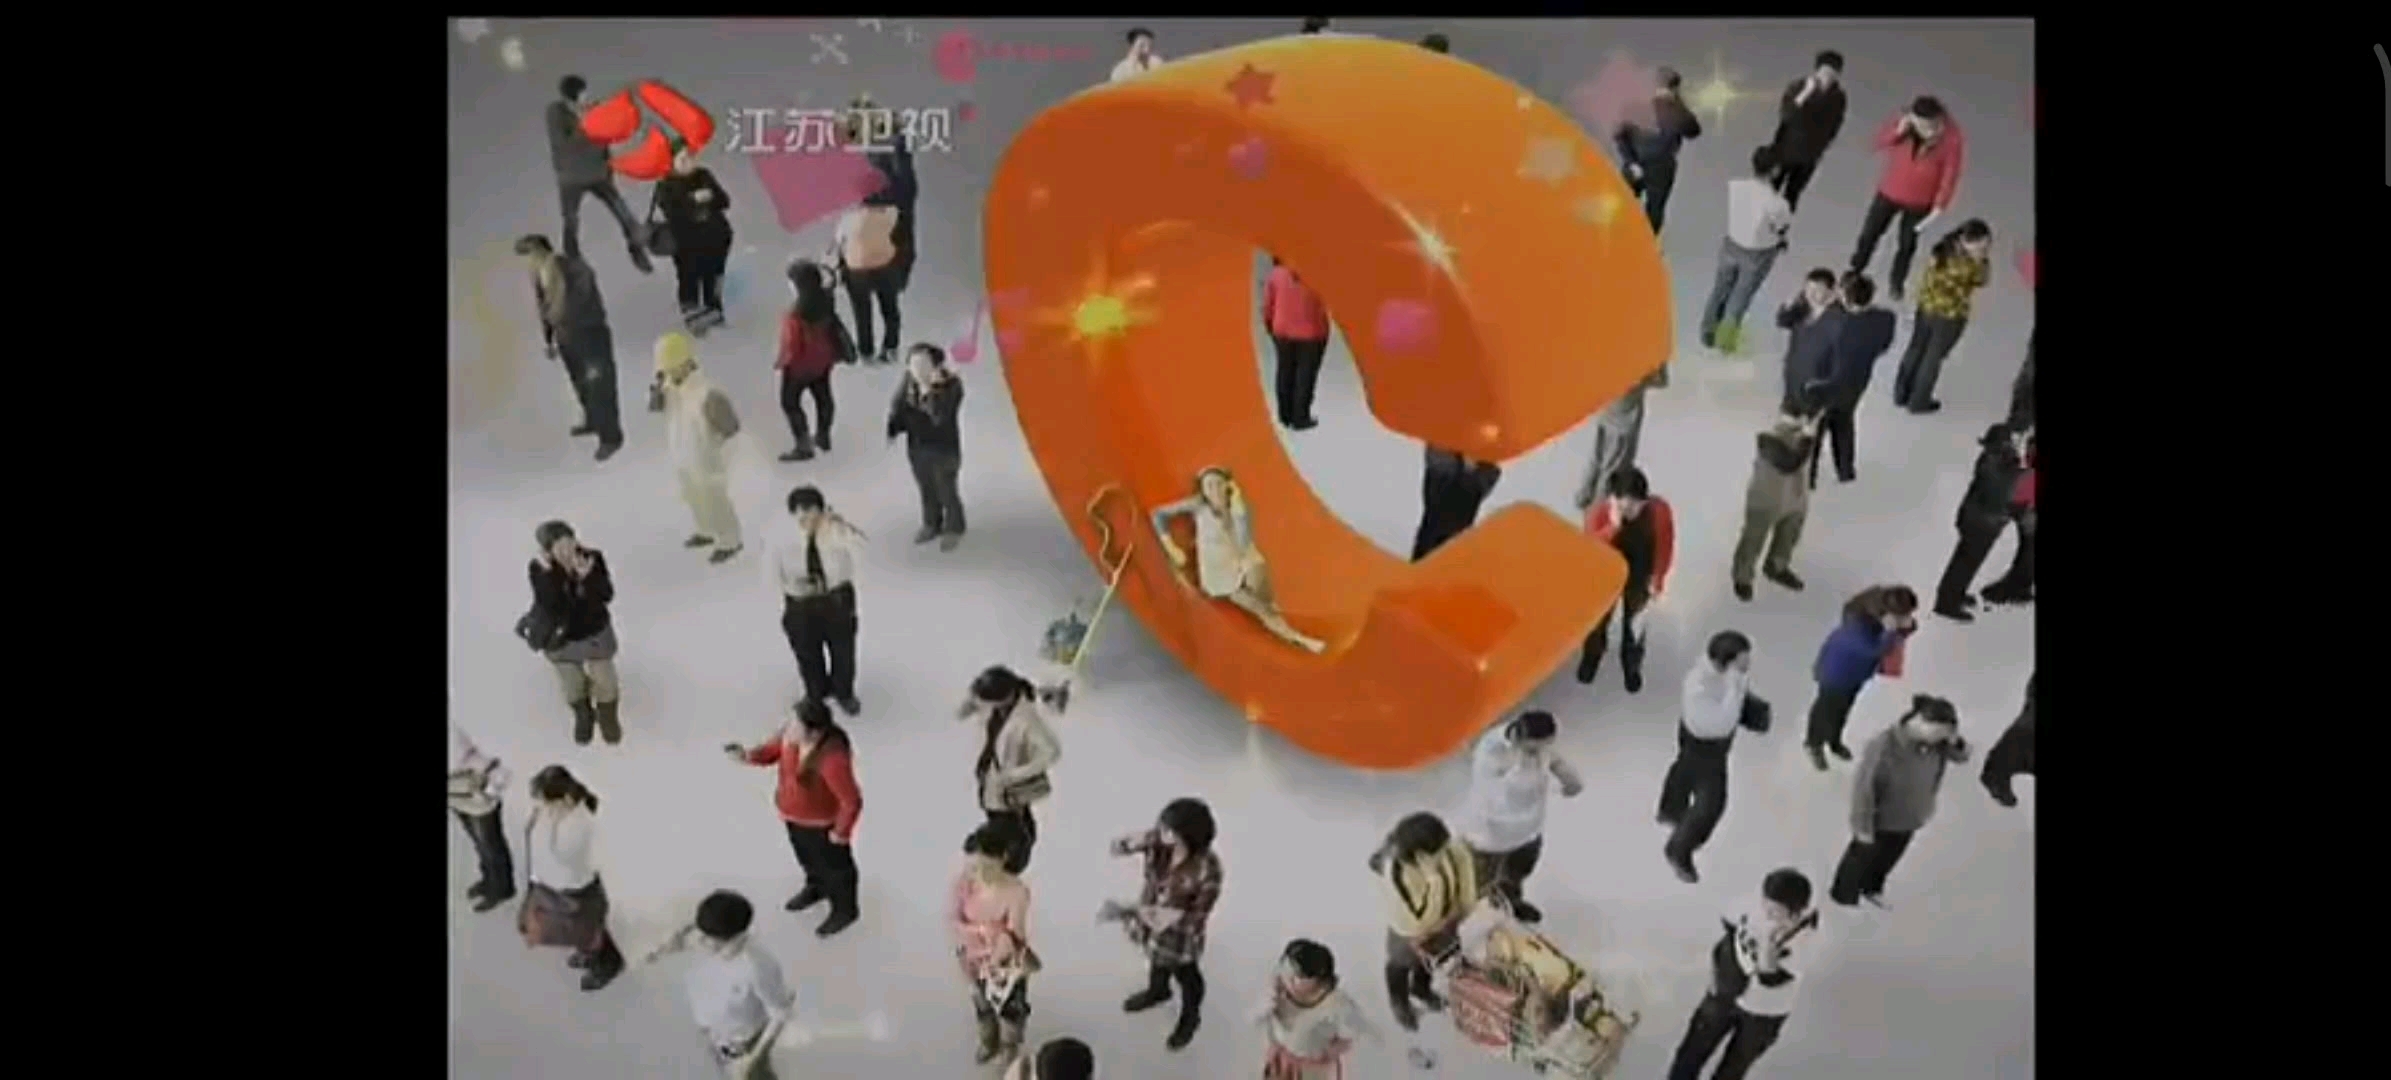 江苏卫视广告2013图片